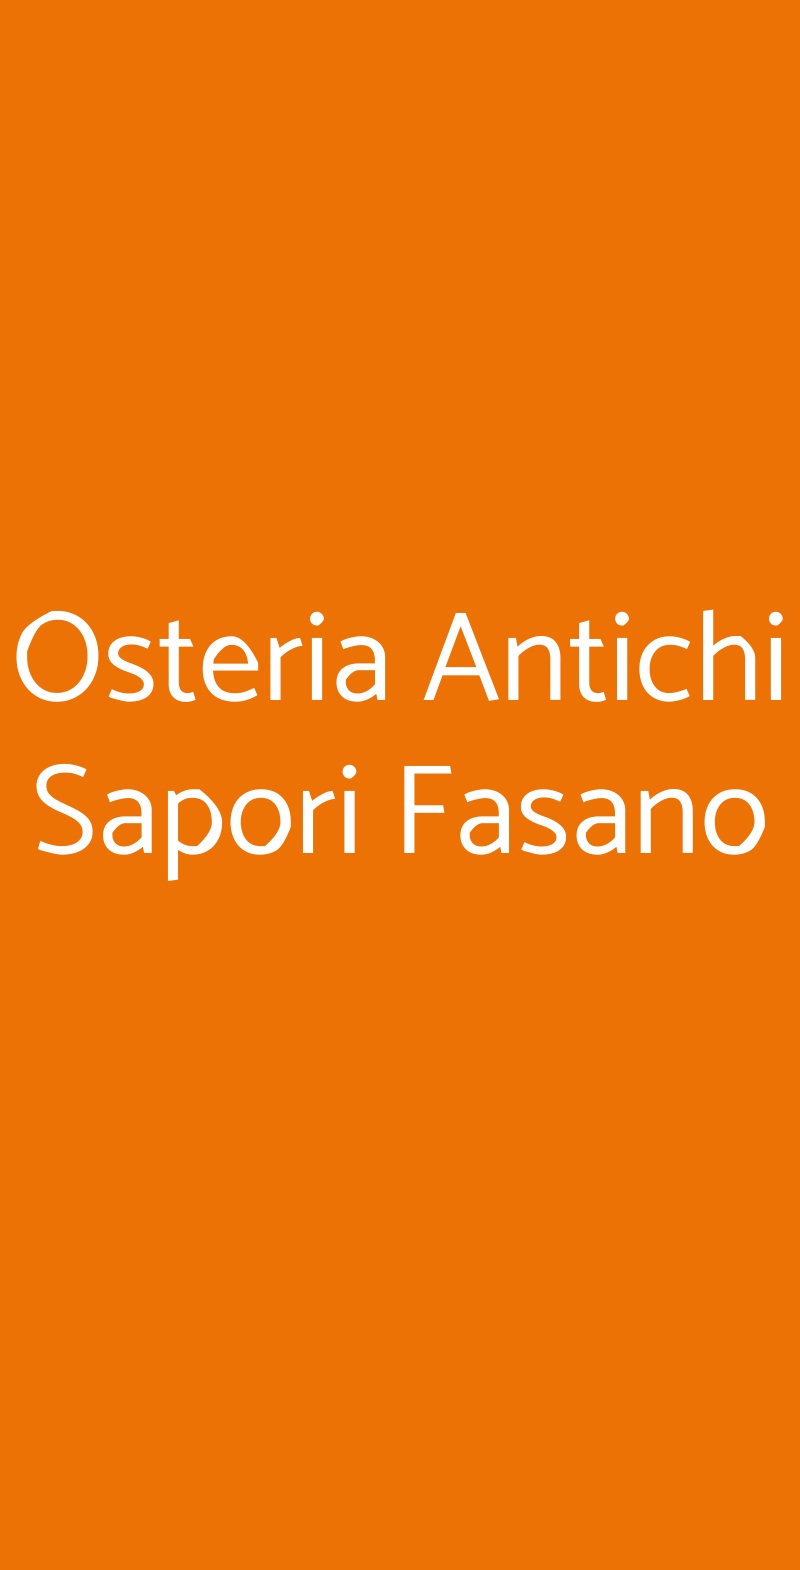 Osteria Antichi Sapori Fasano Fasano menù 1 pagina